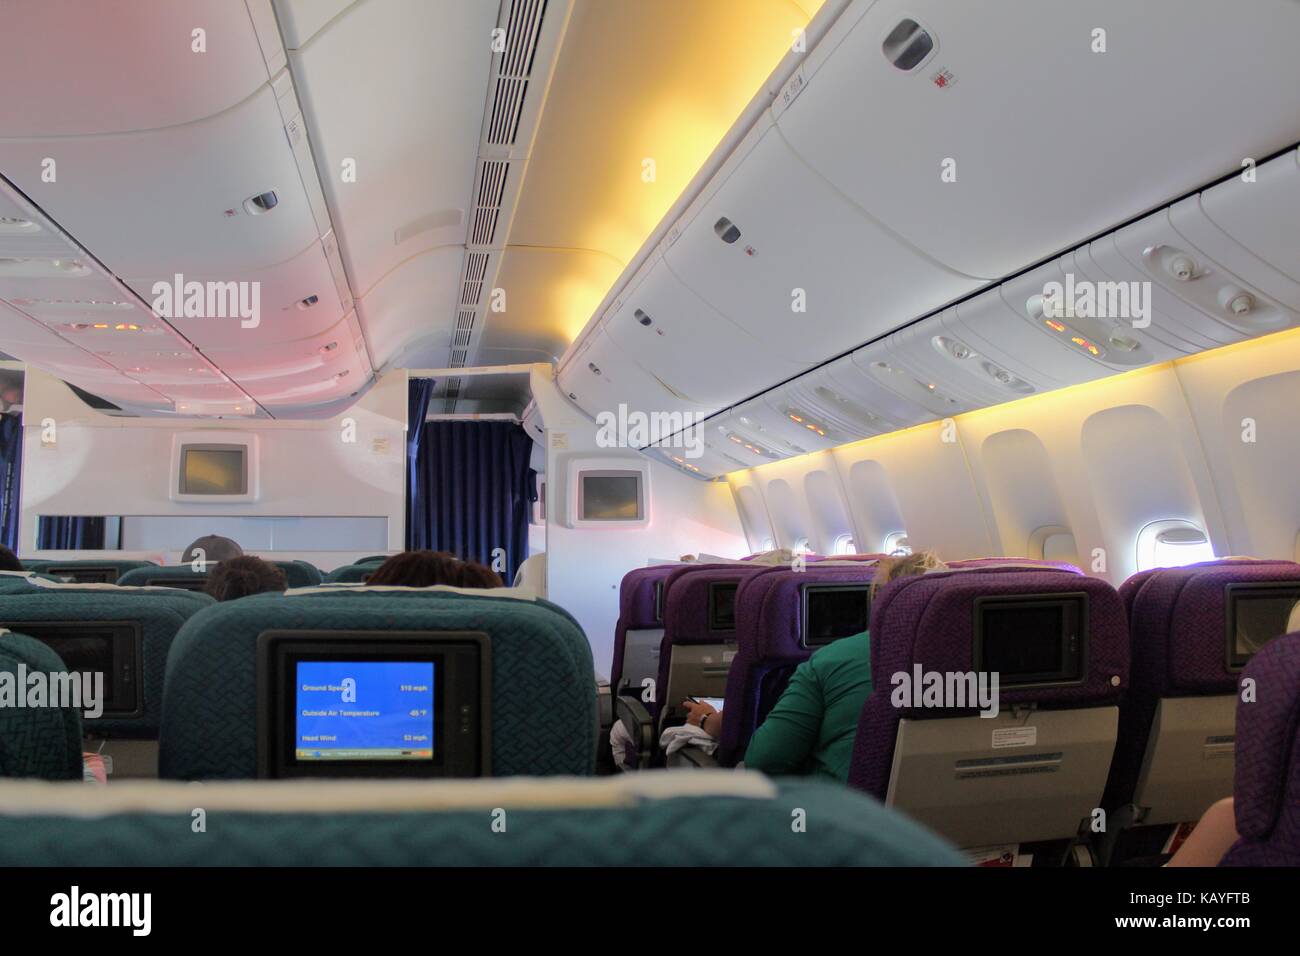 Boeing 777 Interior Stockfotos Boeing 777 Interior Bilder